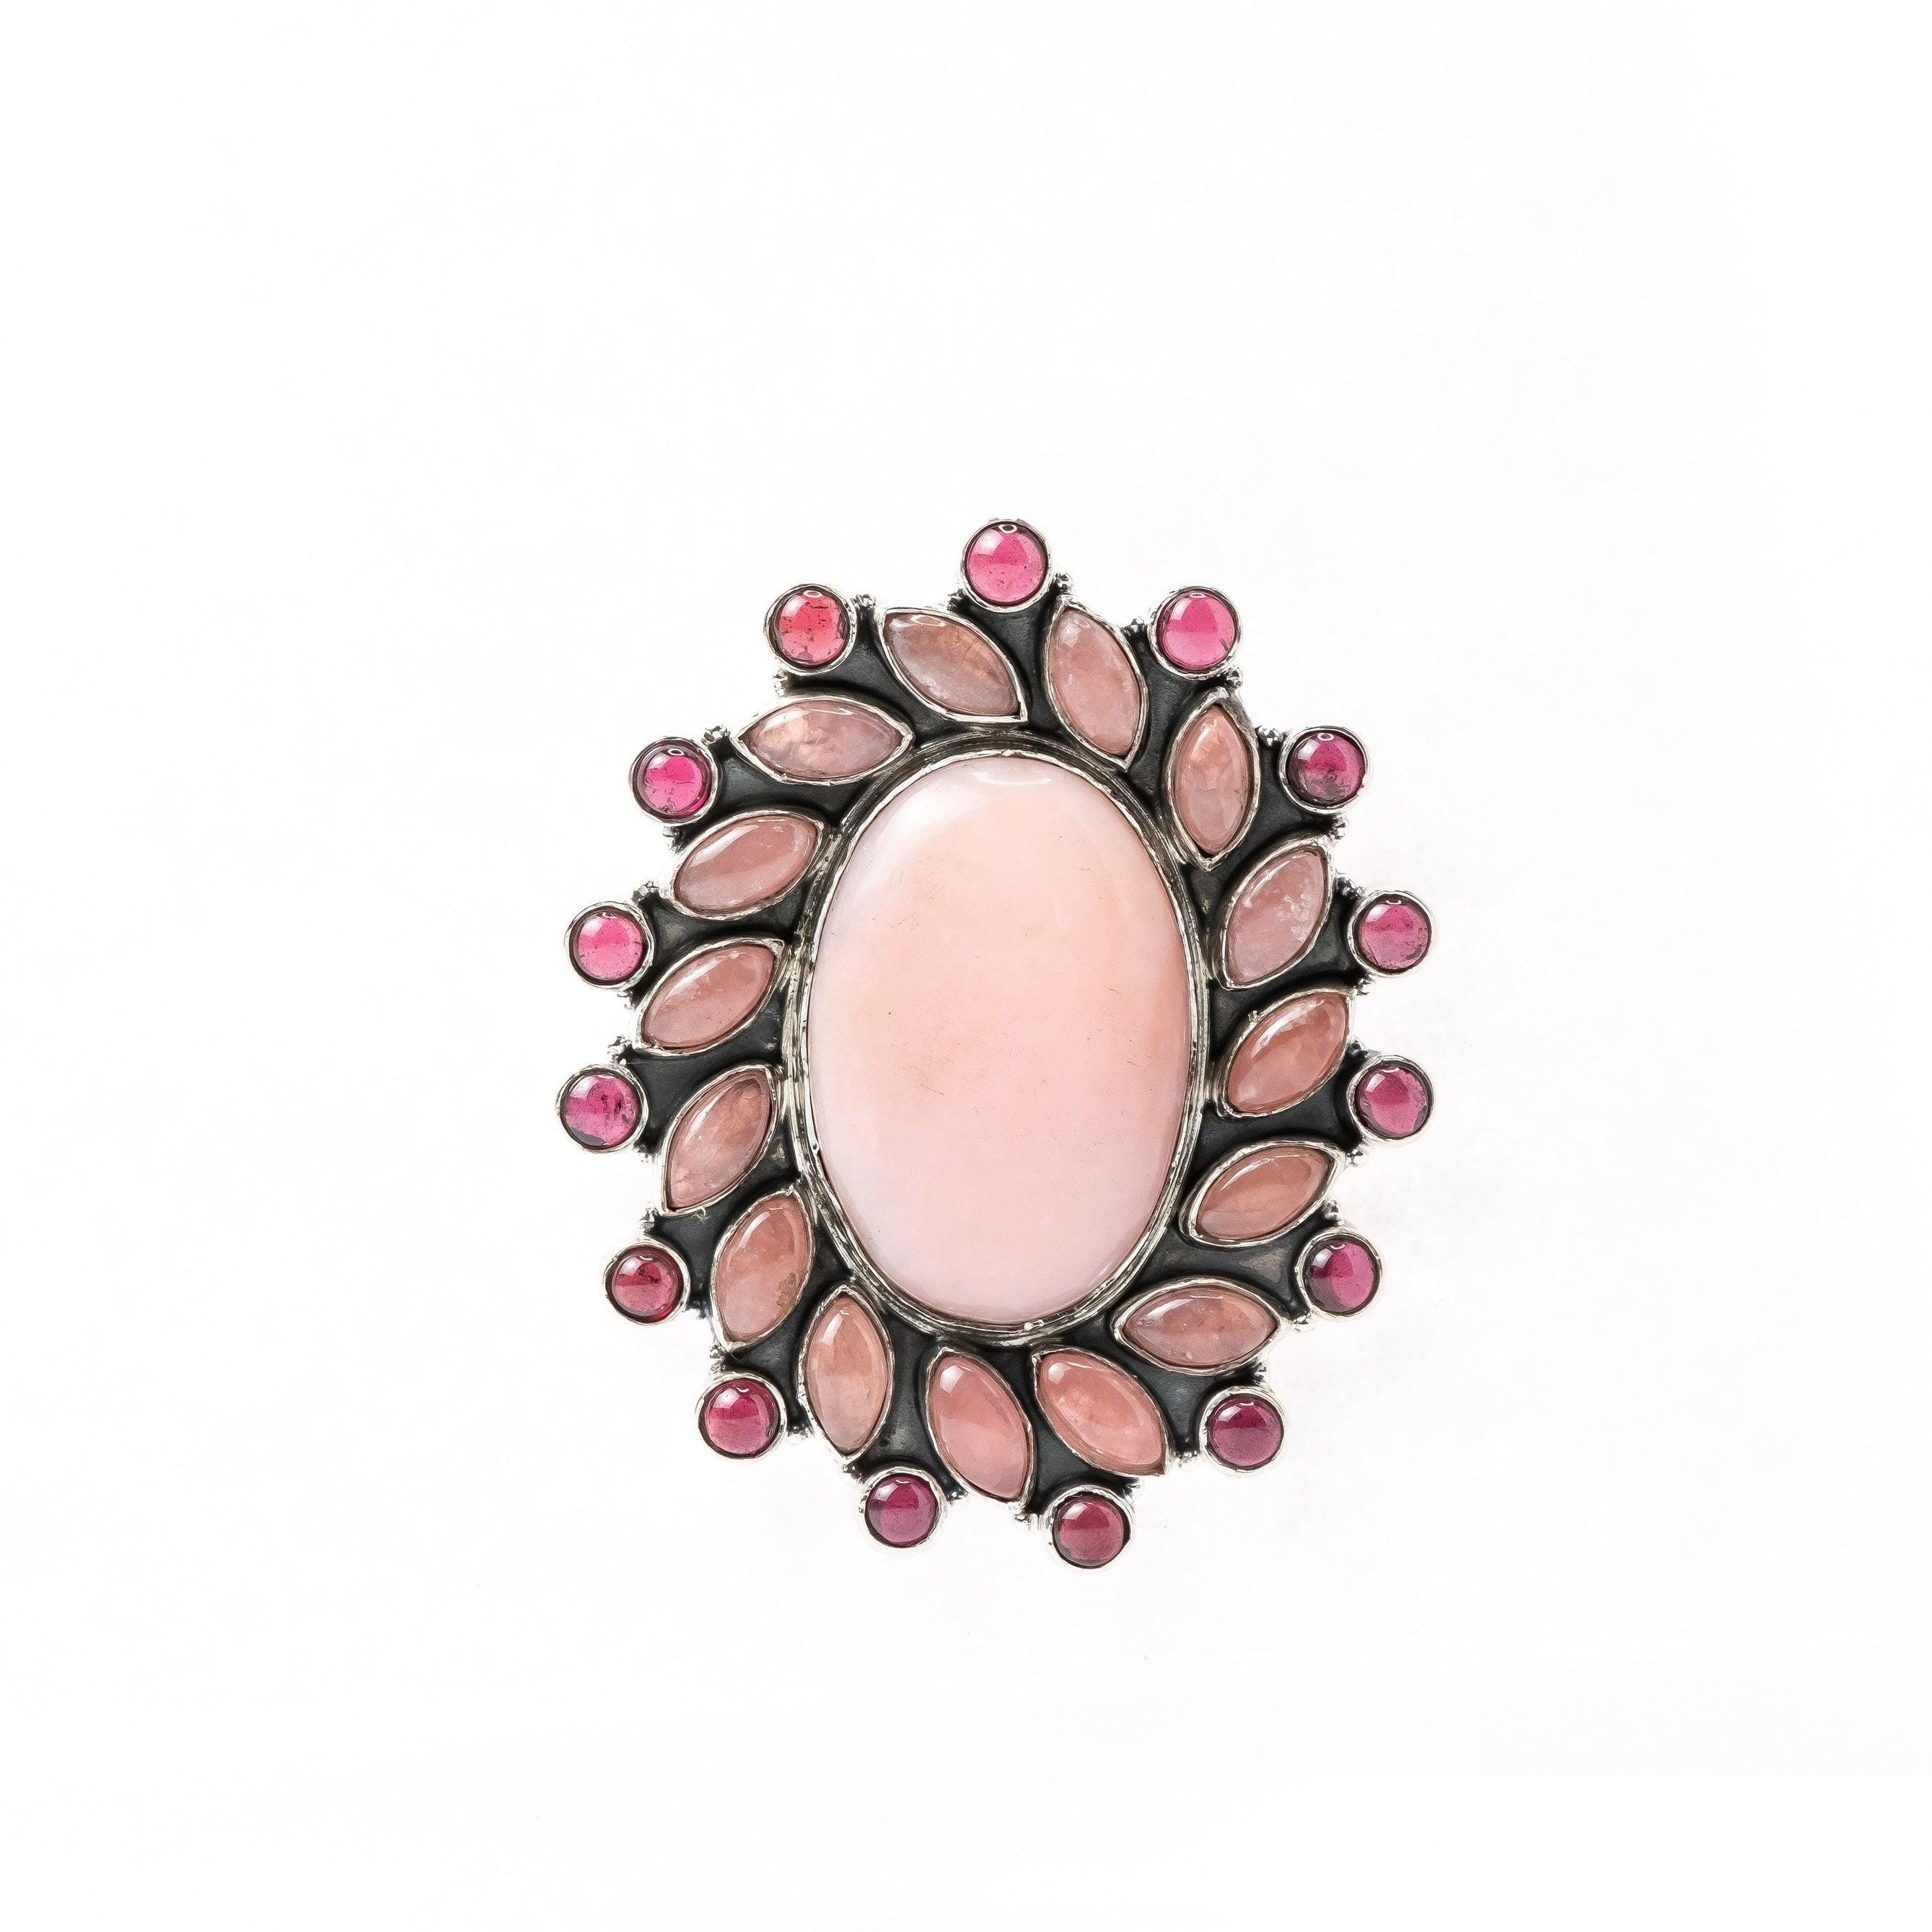 Pink Opal, Rose Quartz, Garnet Natural Gemstone 925 Solid Sterling Silver Jewelry Designer Adjustable Ring ( Size 5 To 13 ) - Silverhubjewels